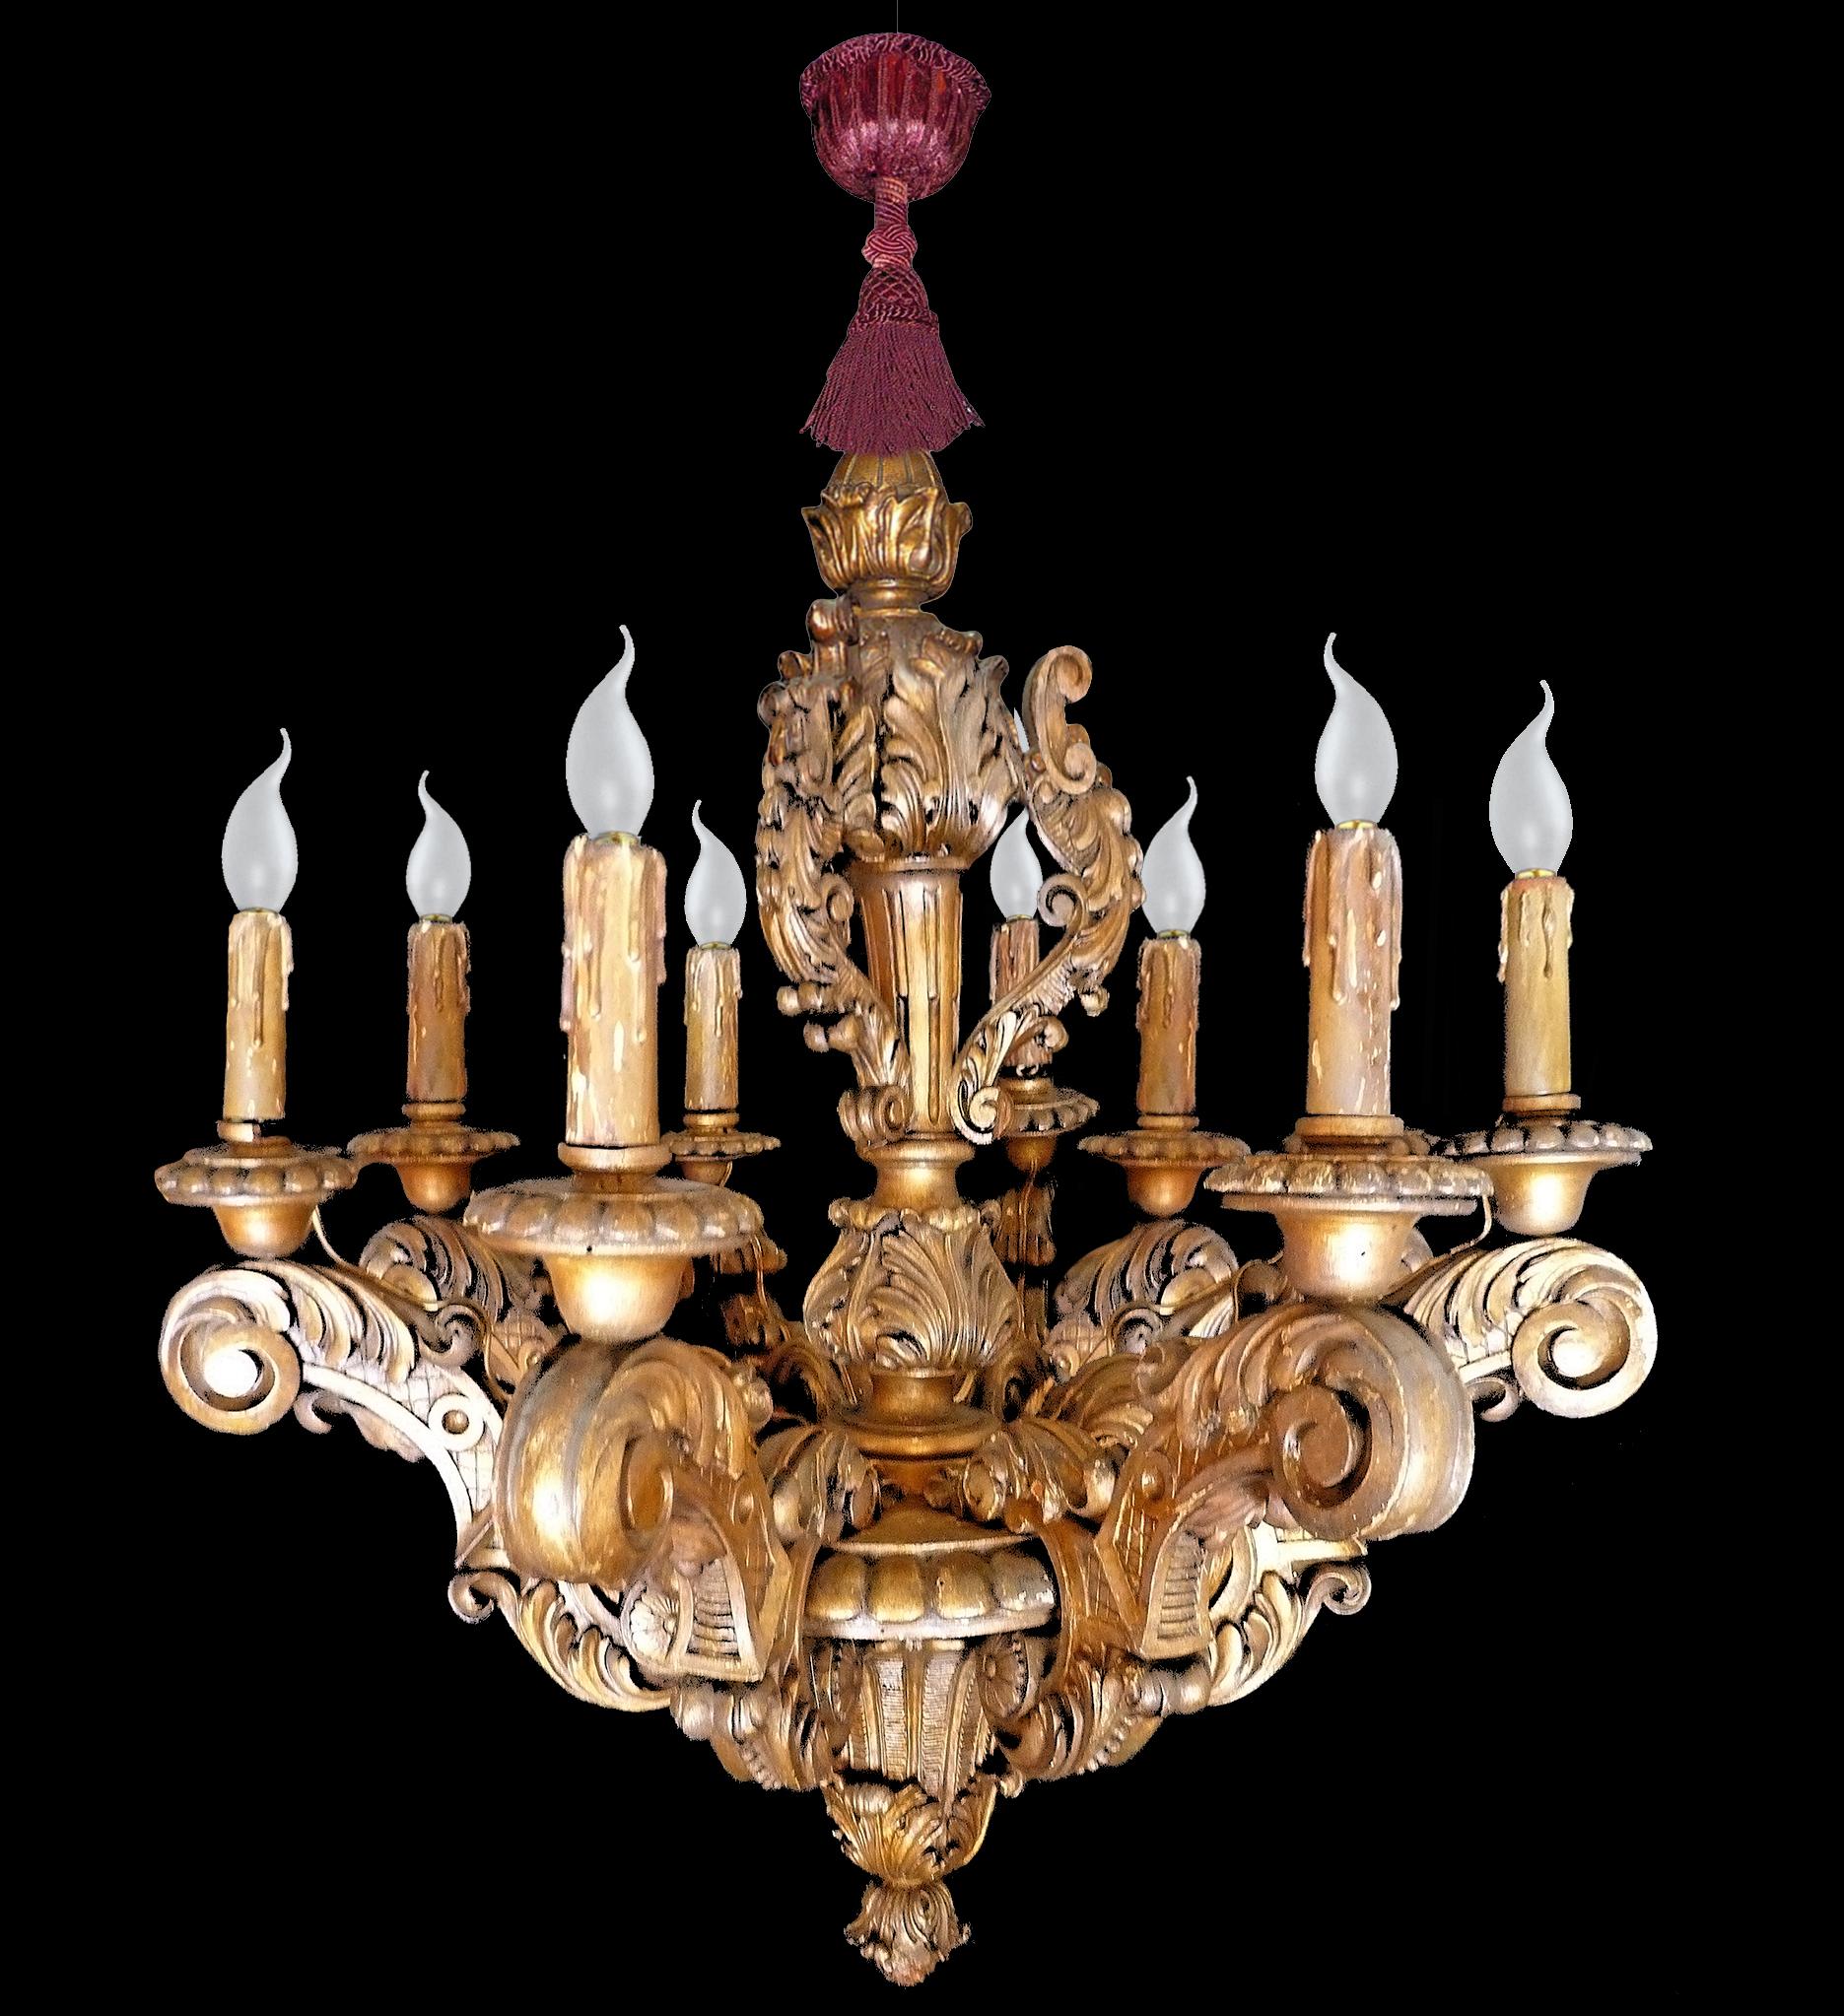 Grand lustre néoclassique en bois sculpté et doré, de style baroque, à cinq lumières. Les bras à volutes, ornés de feuillages, sont pincés jusqu'à un pommeau central à godrons, surmonté d'une tige balustre feuillagée et surmonté d'une fleur en forme